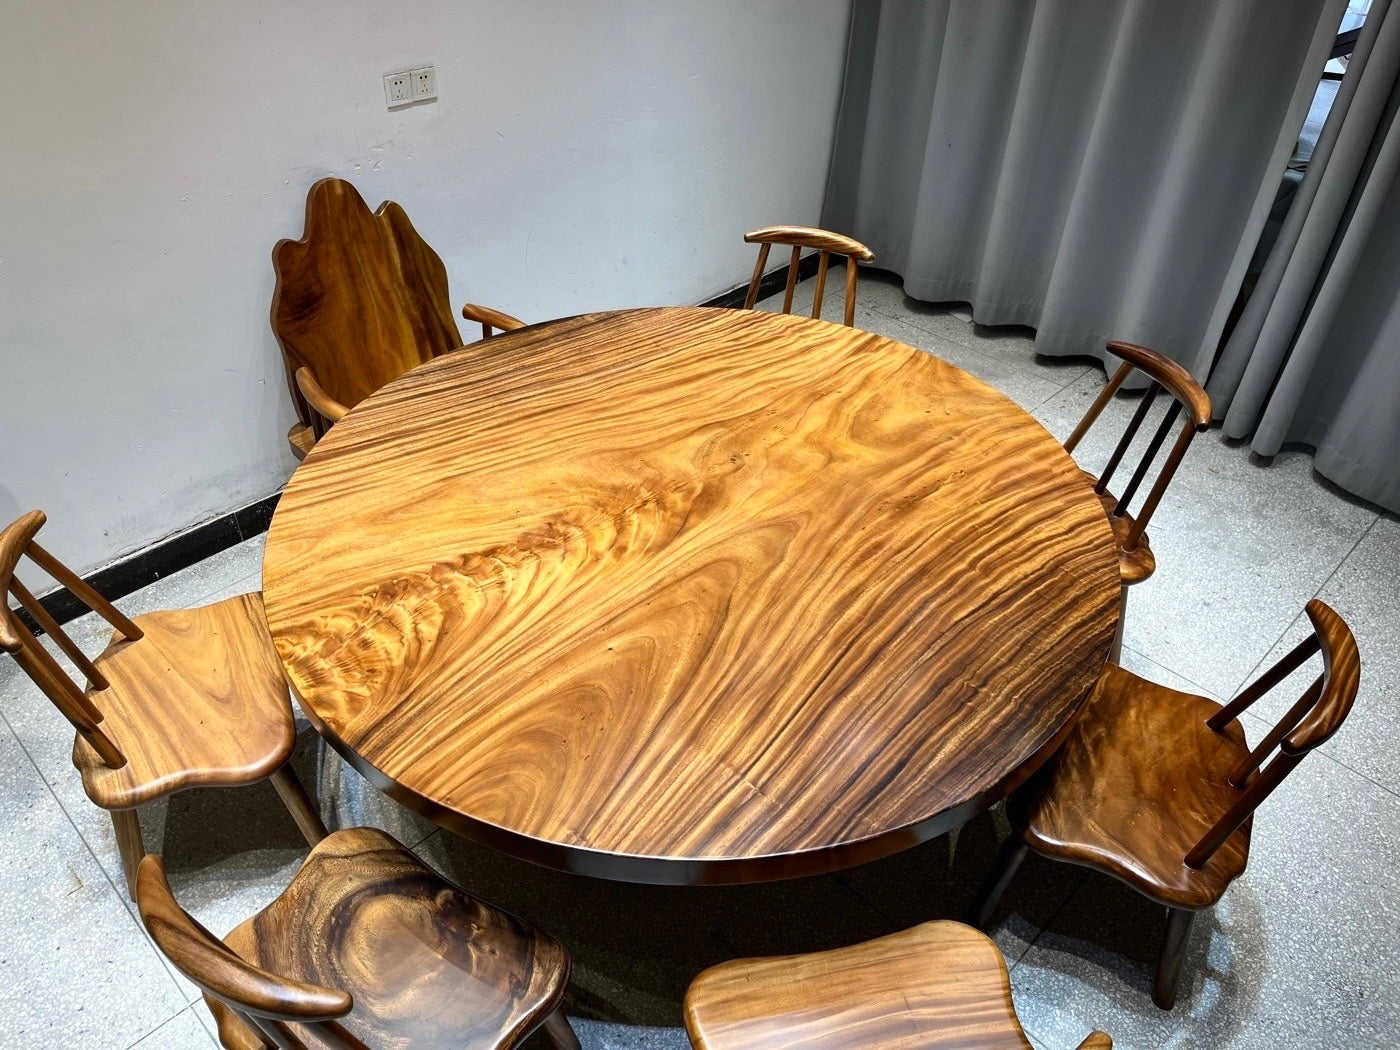 Tavolo rotondo in legno grande da 71", tavolo rotondo in legno massello, base per tavolo rotondo in legno, tavolo rotondo in legno grande